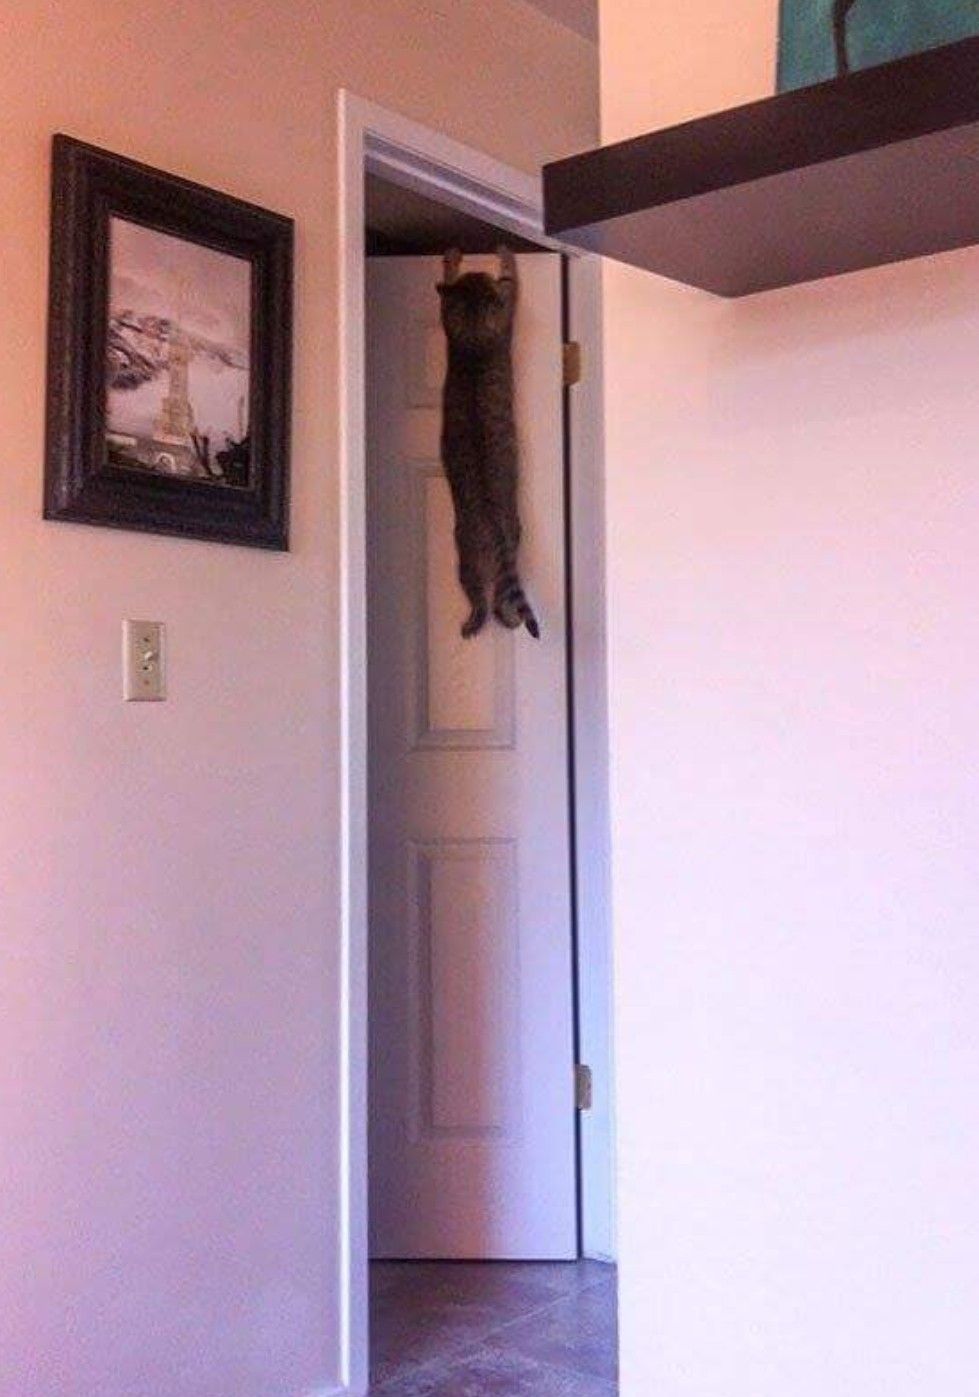 A cat hanging off a door